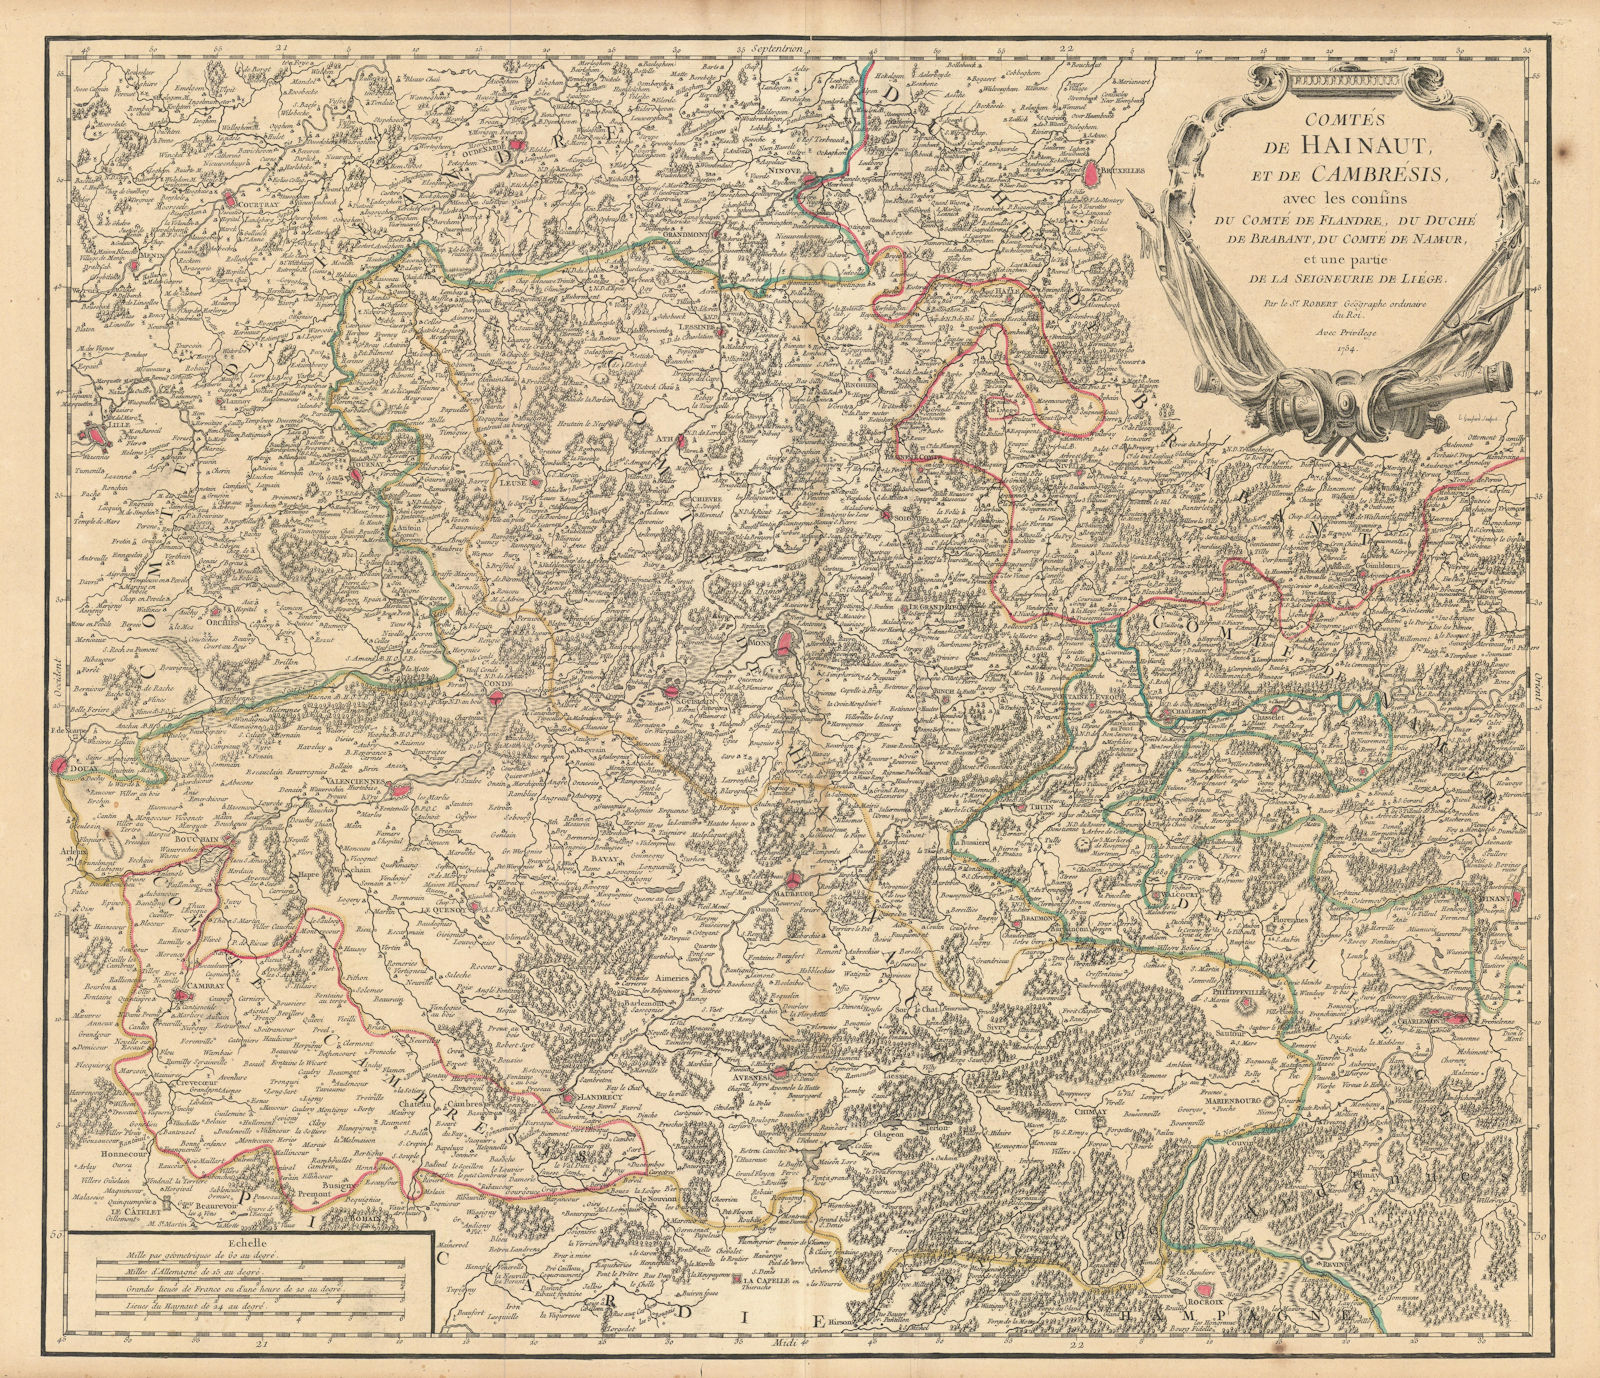 "Comtés de Hainaut, et de Cambrésis". Cambrai. Belgium/France. VAUGONDY 1754 map